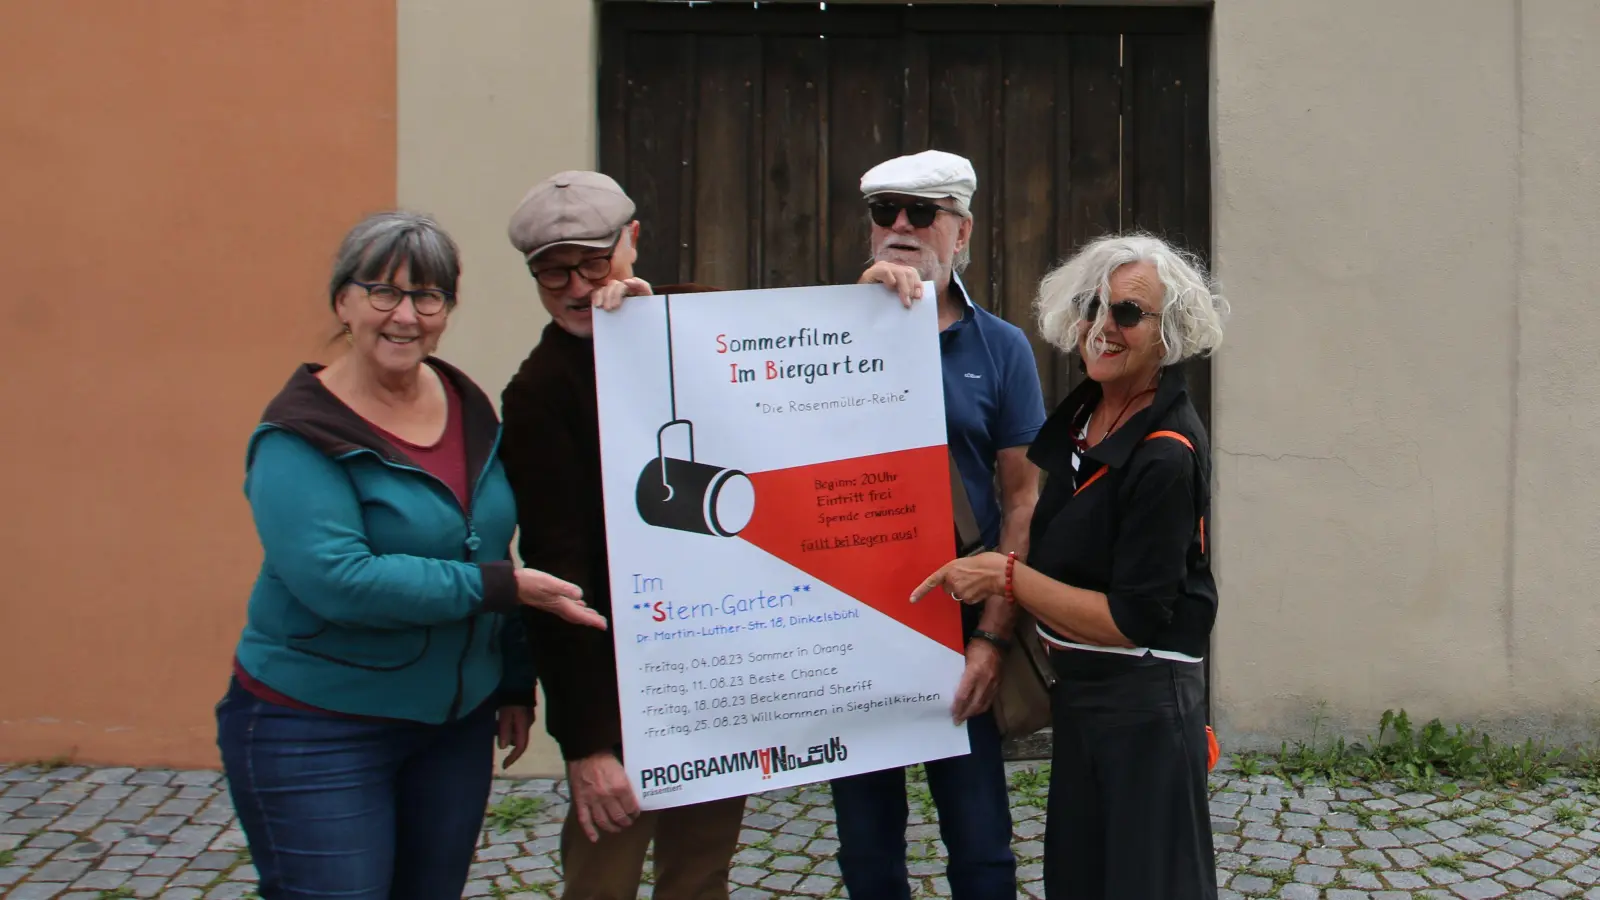 Anita Förster, Hilmar Braun, Detlev Böhm und Gudula Dreskes-Böhm (von links) freuen sich, wenn sich die Biergarten-Tür für den Kinosommer öffnet. (Foto: Martina Haas)